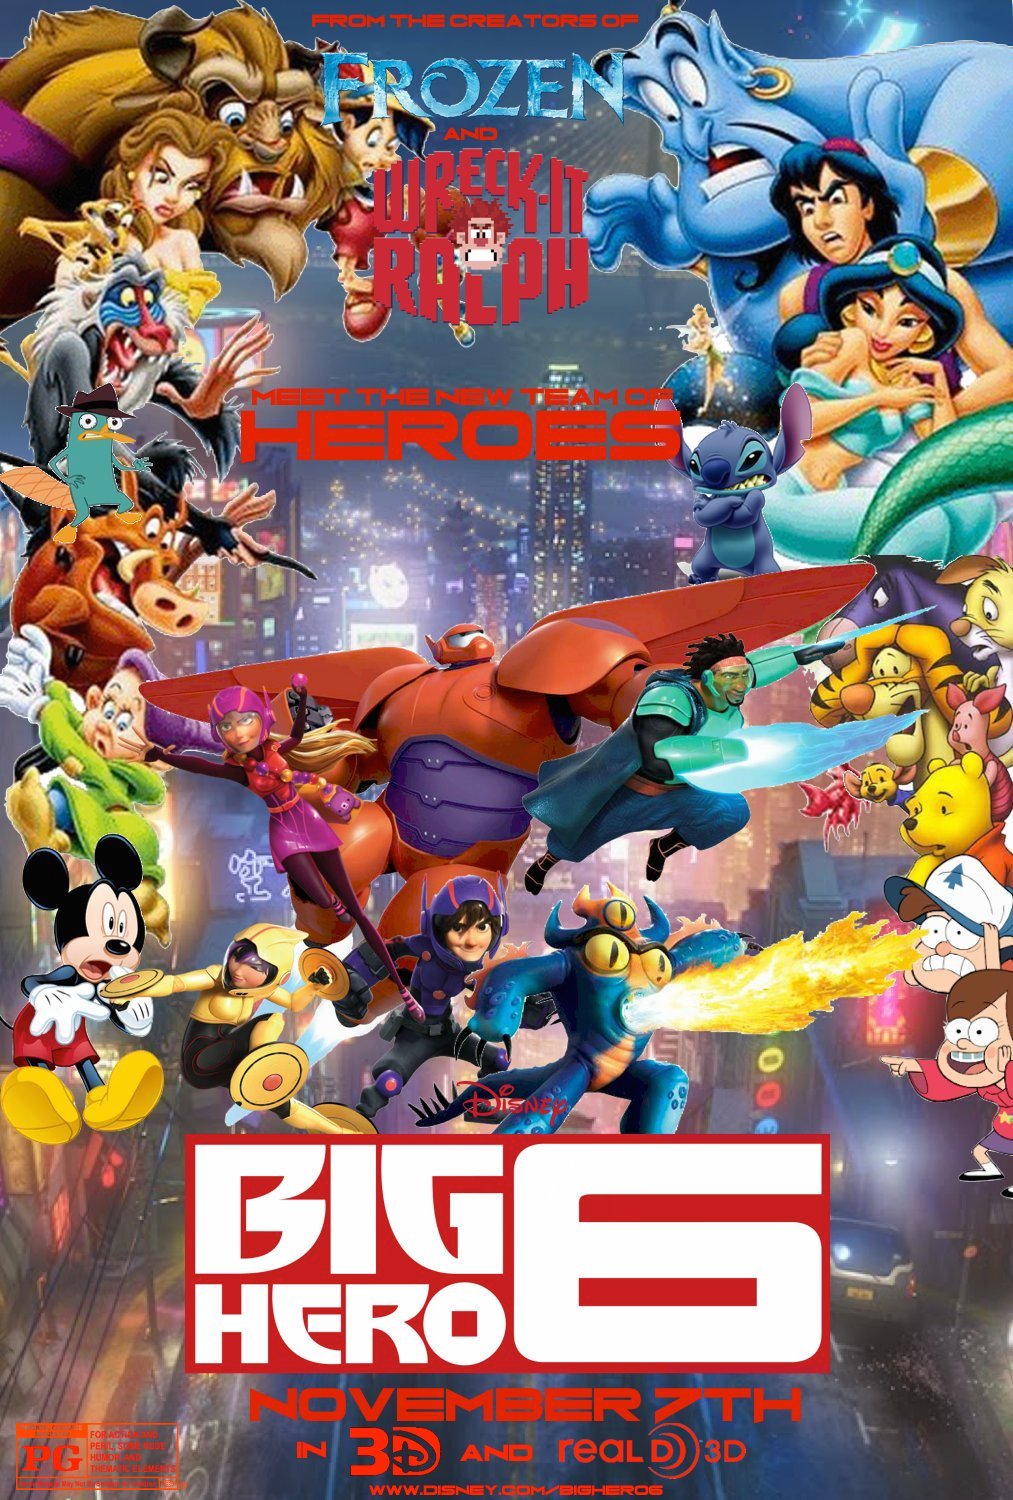 Big Hero 6 Disney Pixar